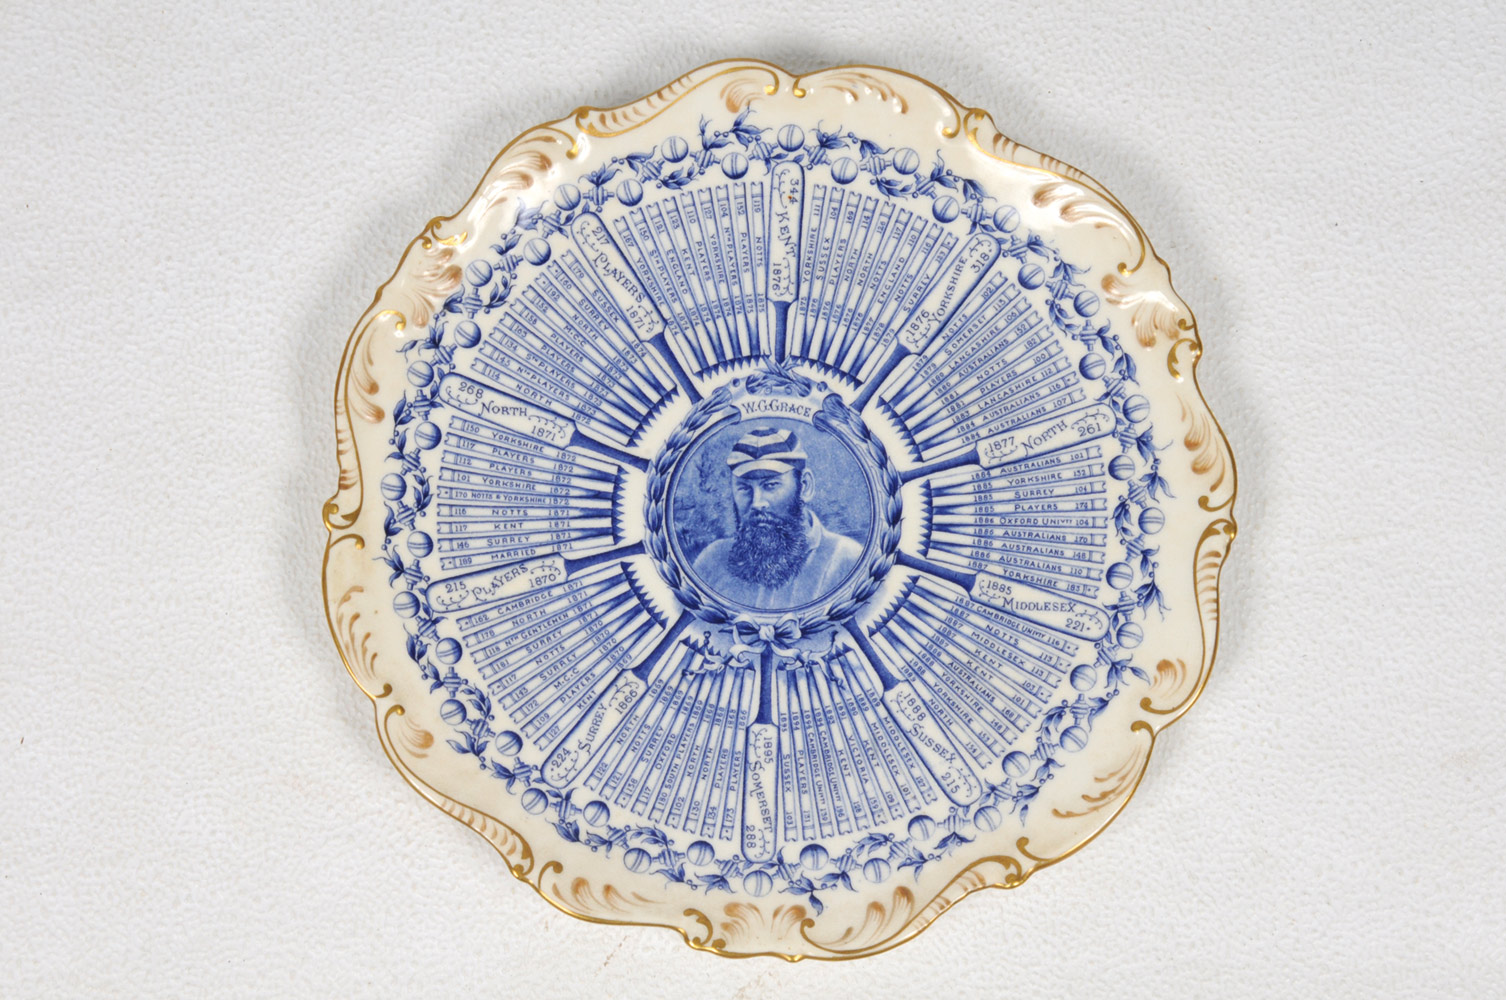 W.G. Grace. Original Coalport porcelain plate commemorating W.G. Grace’s Century Of Centuries